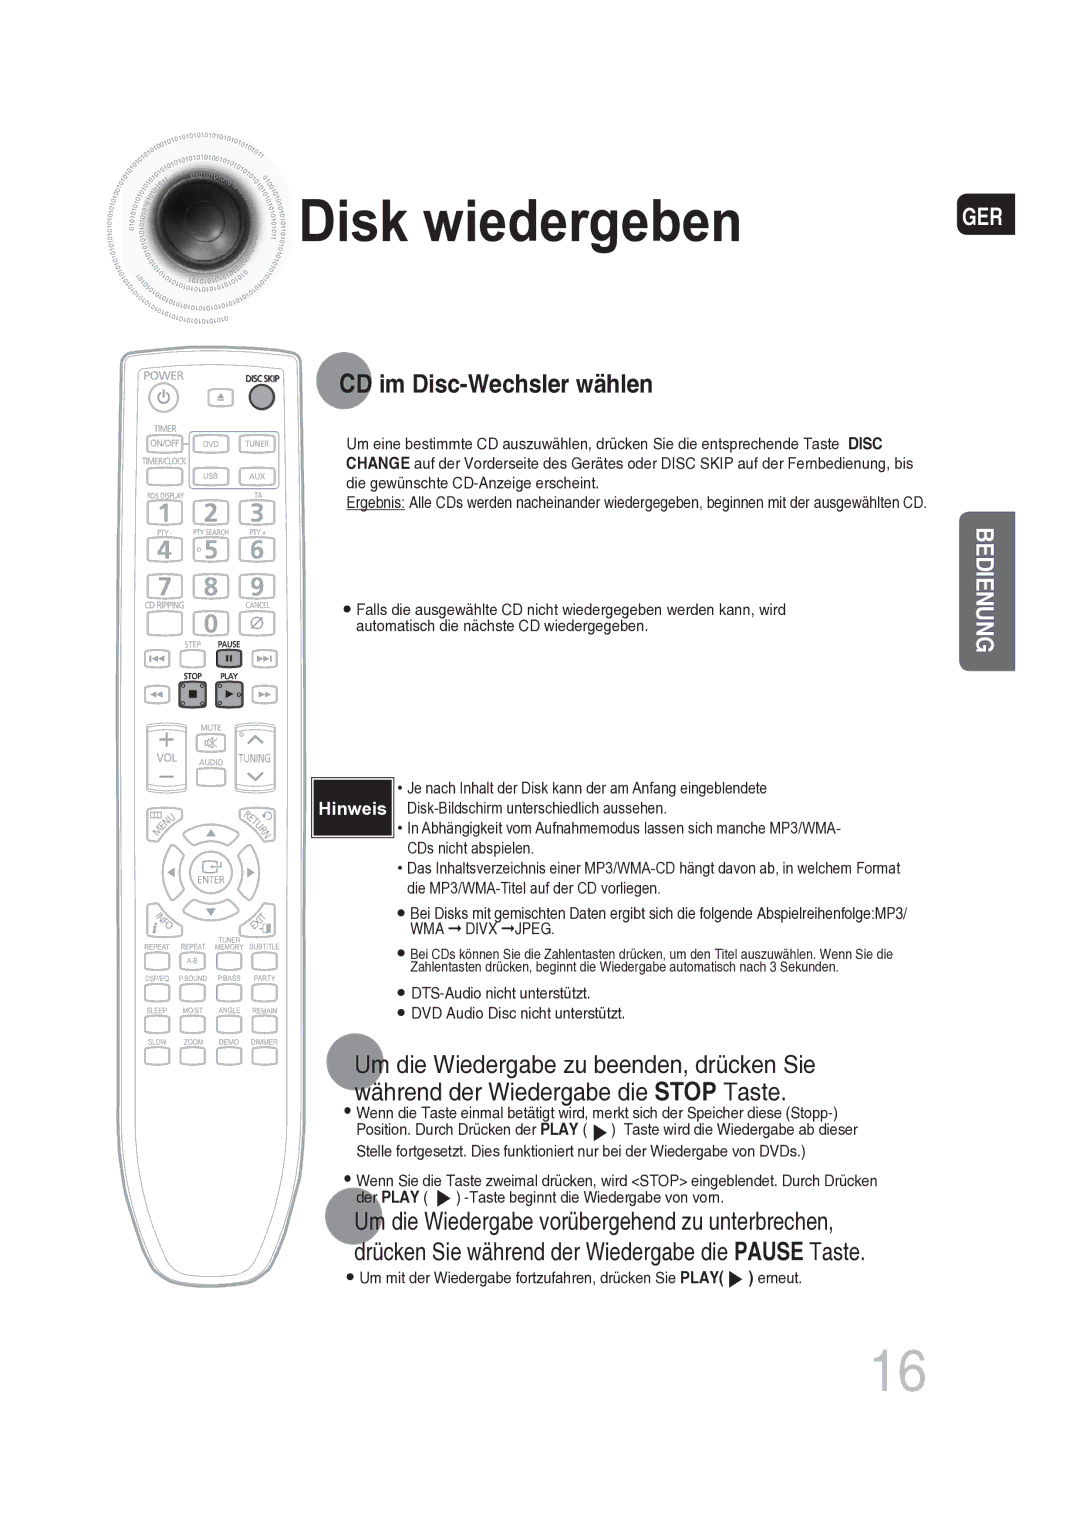 Samsung MAX-DG56R/EDC manual CD im Disc-Wechsler wählen, Um mit der Wiedergabe fortzufahren, drücken Sie Play erneut 